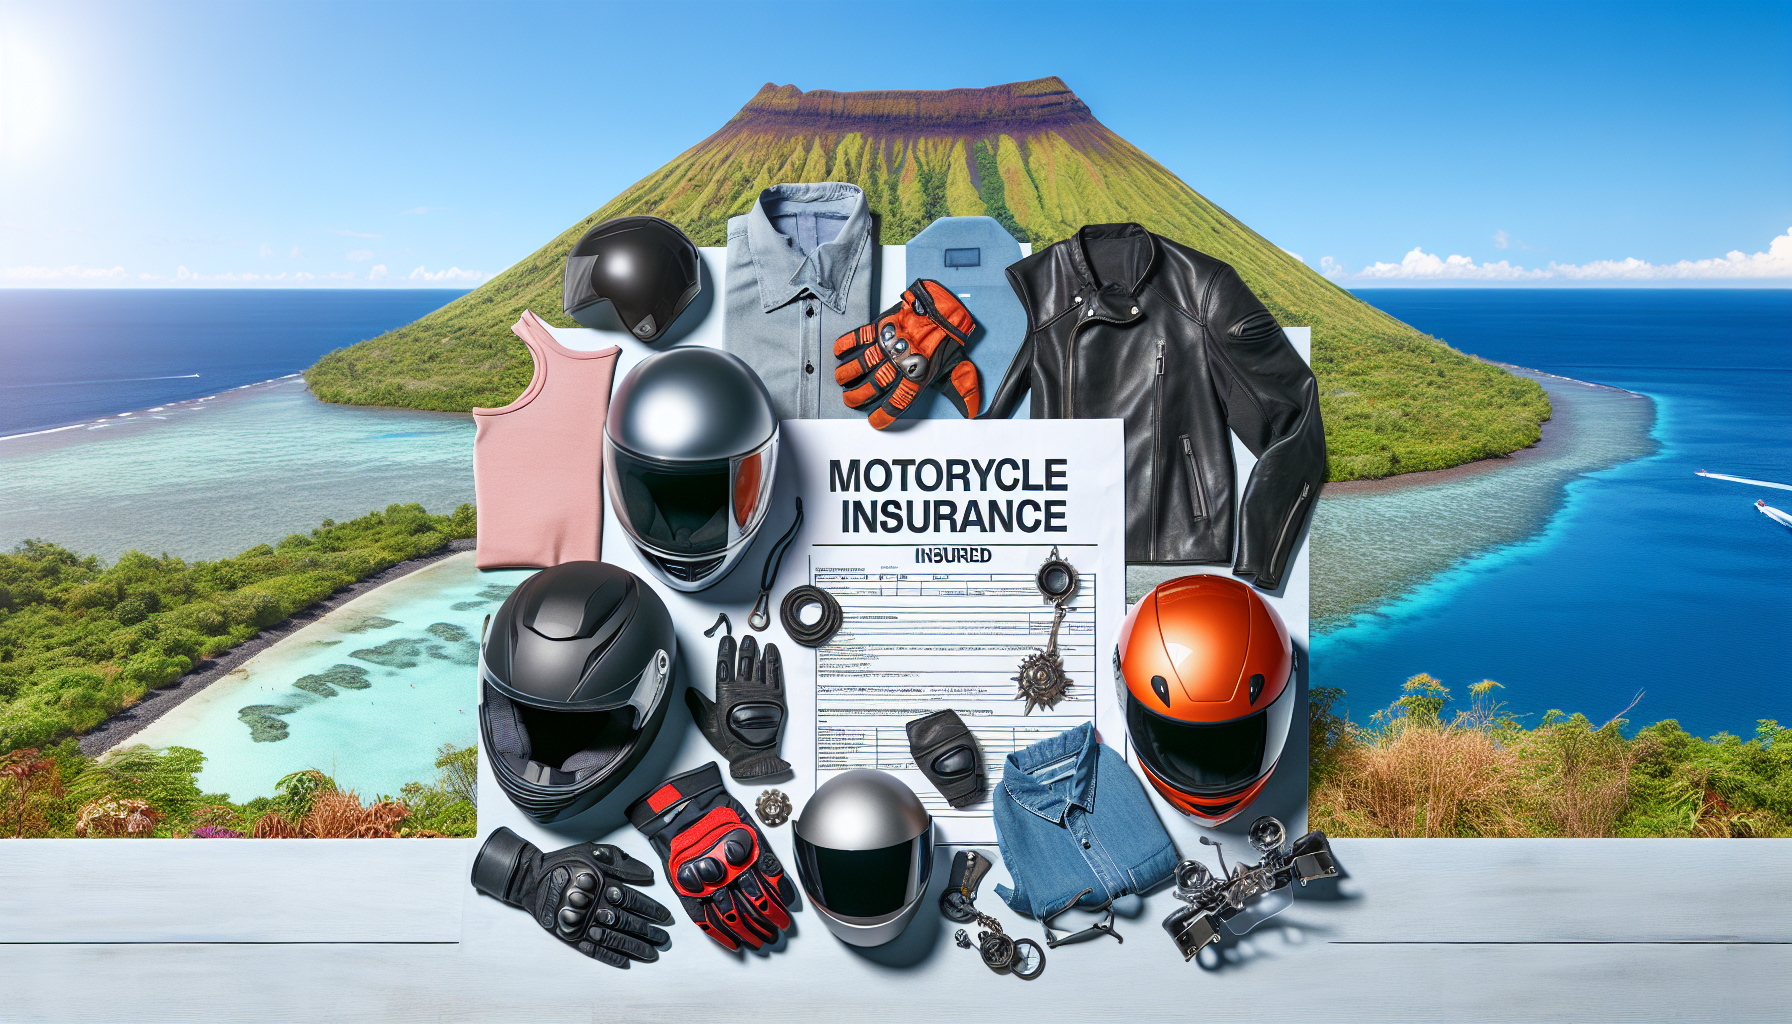 découvrez quels accessoires sont inclus dans l'assurance moto à la réunion et choisissez la meilleure protection pour votre véhicule.